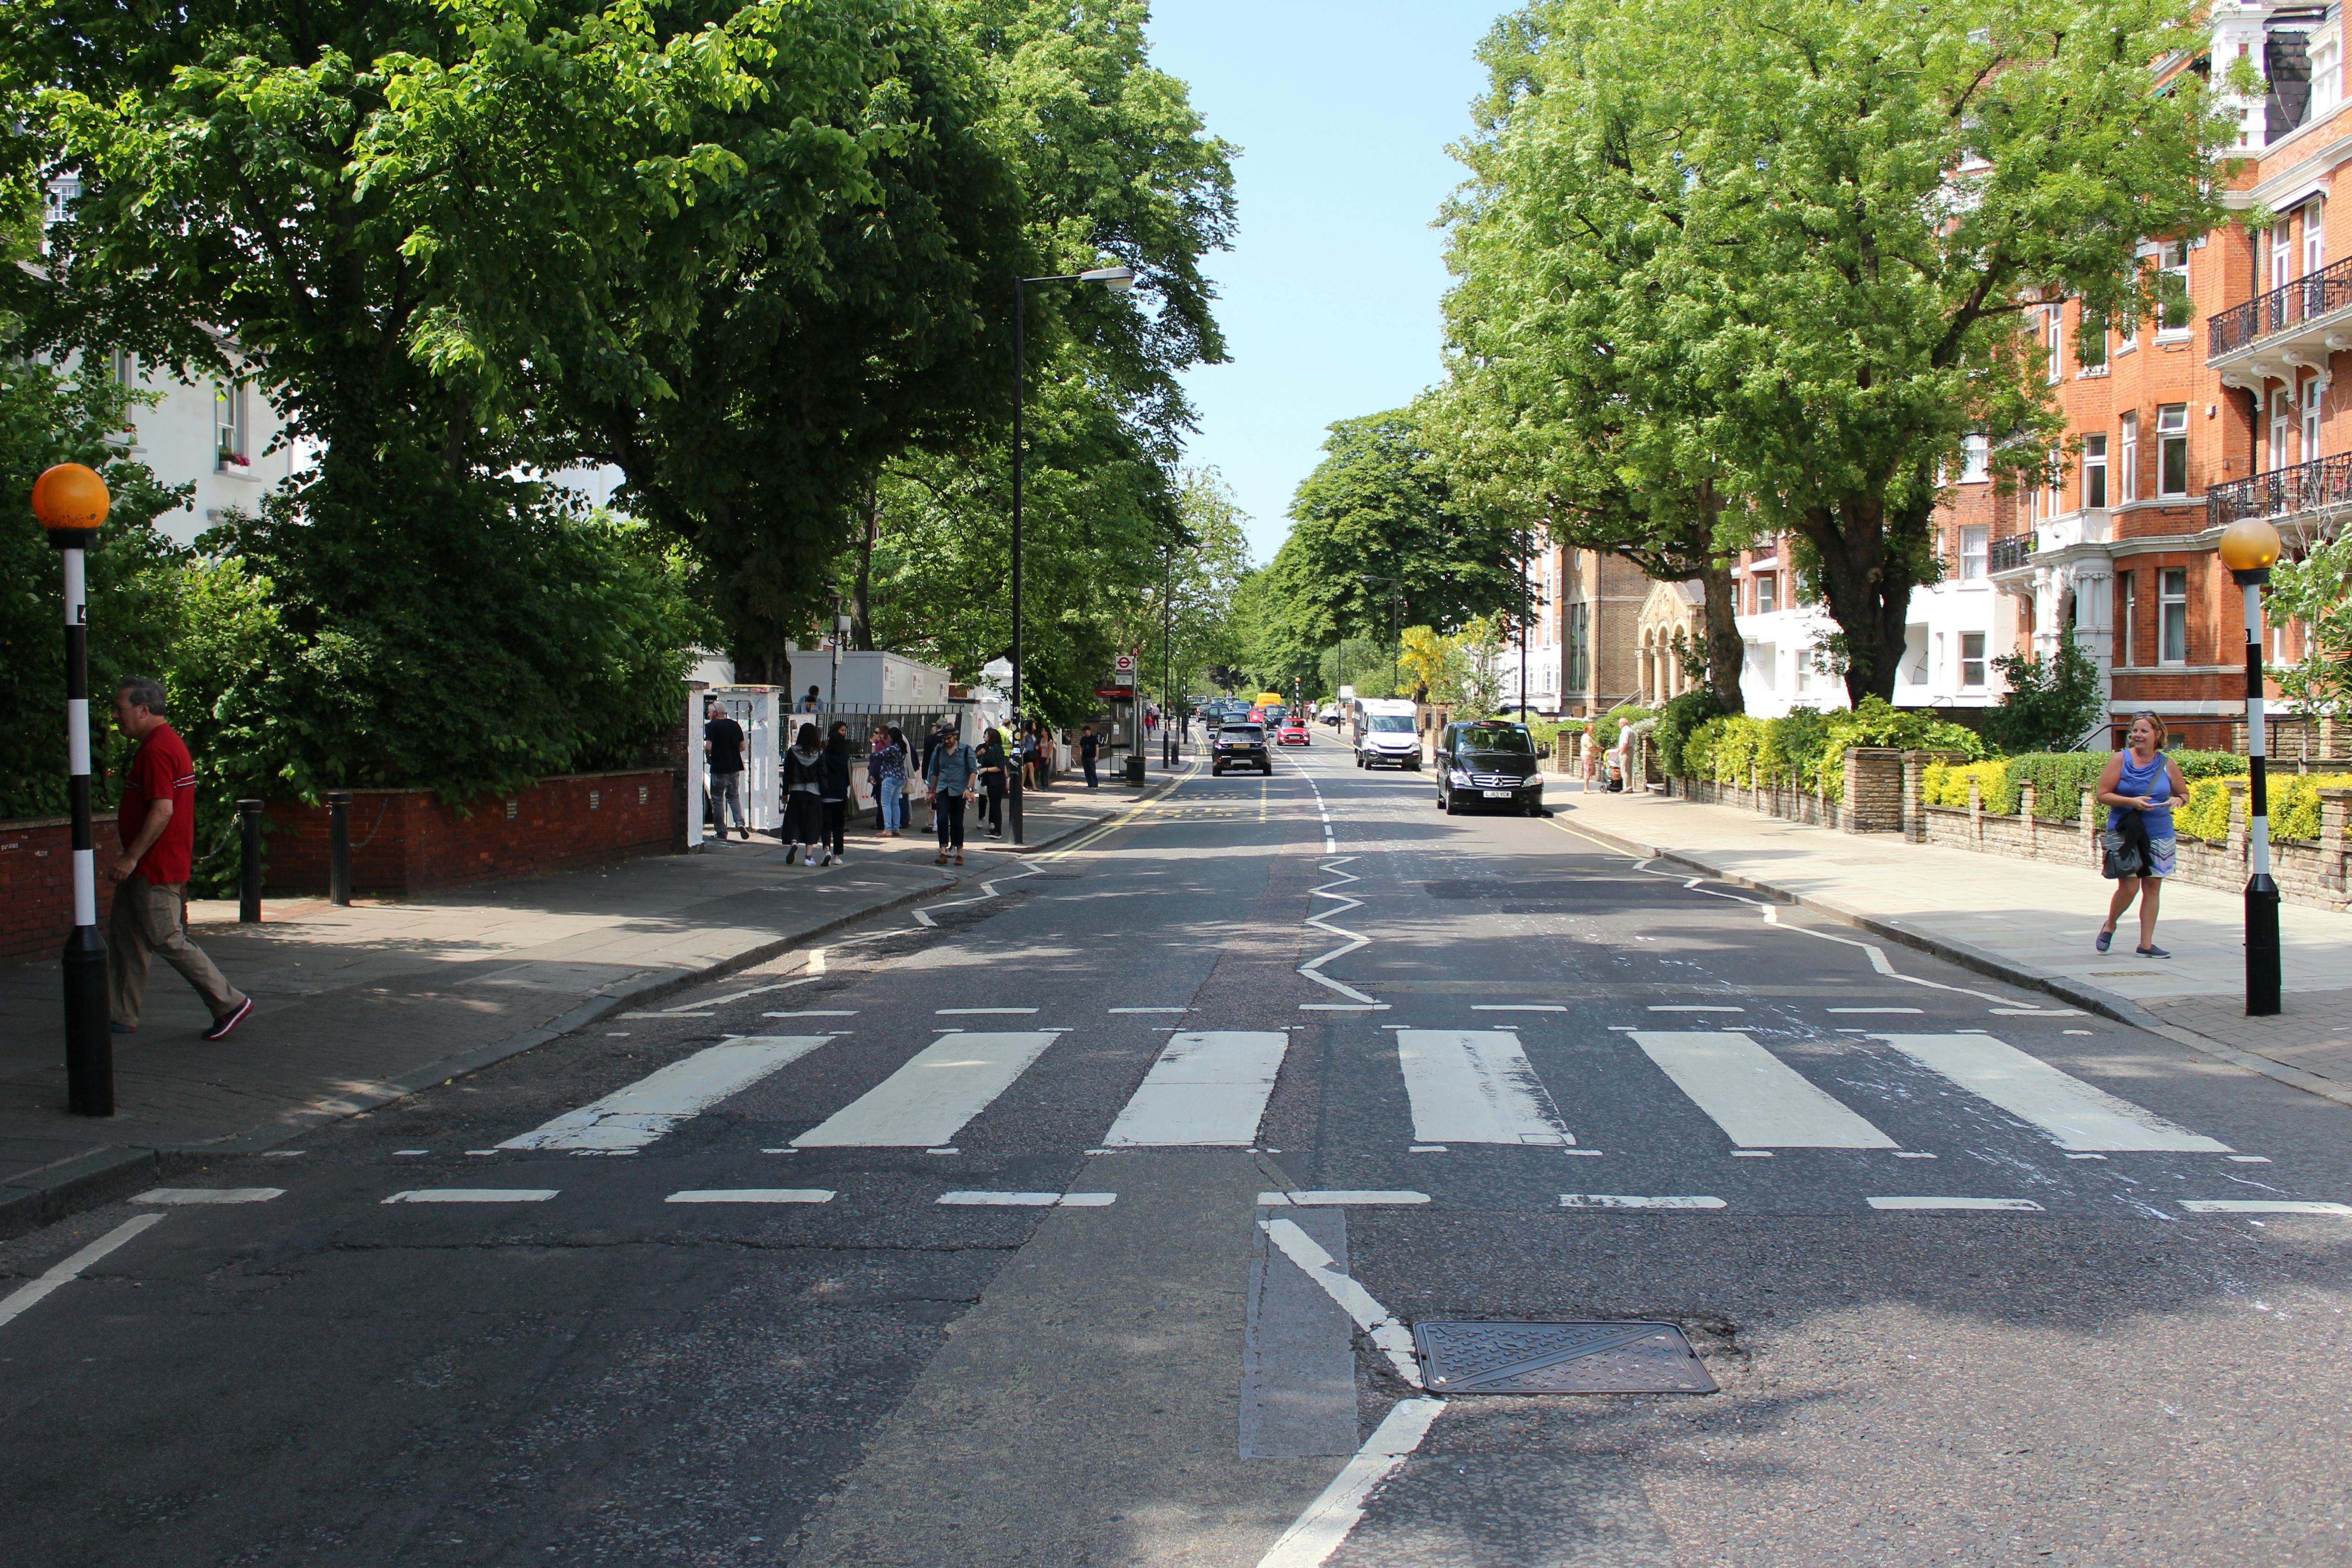 Magiczna tajemnicza wycieczka piesza Beatlesów po Marylebone i Abbey Road